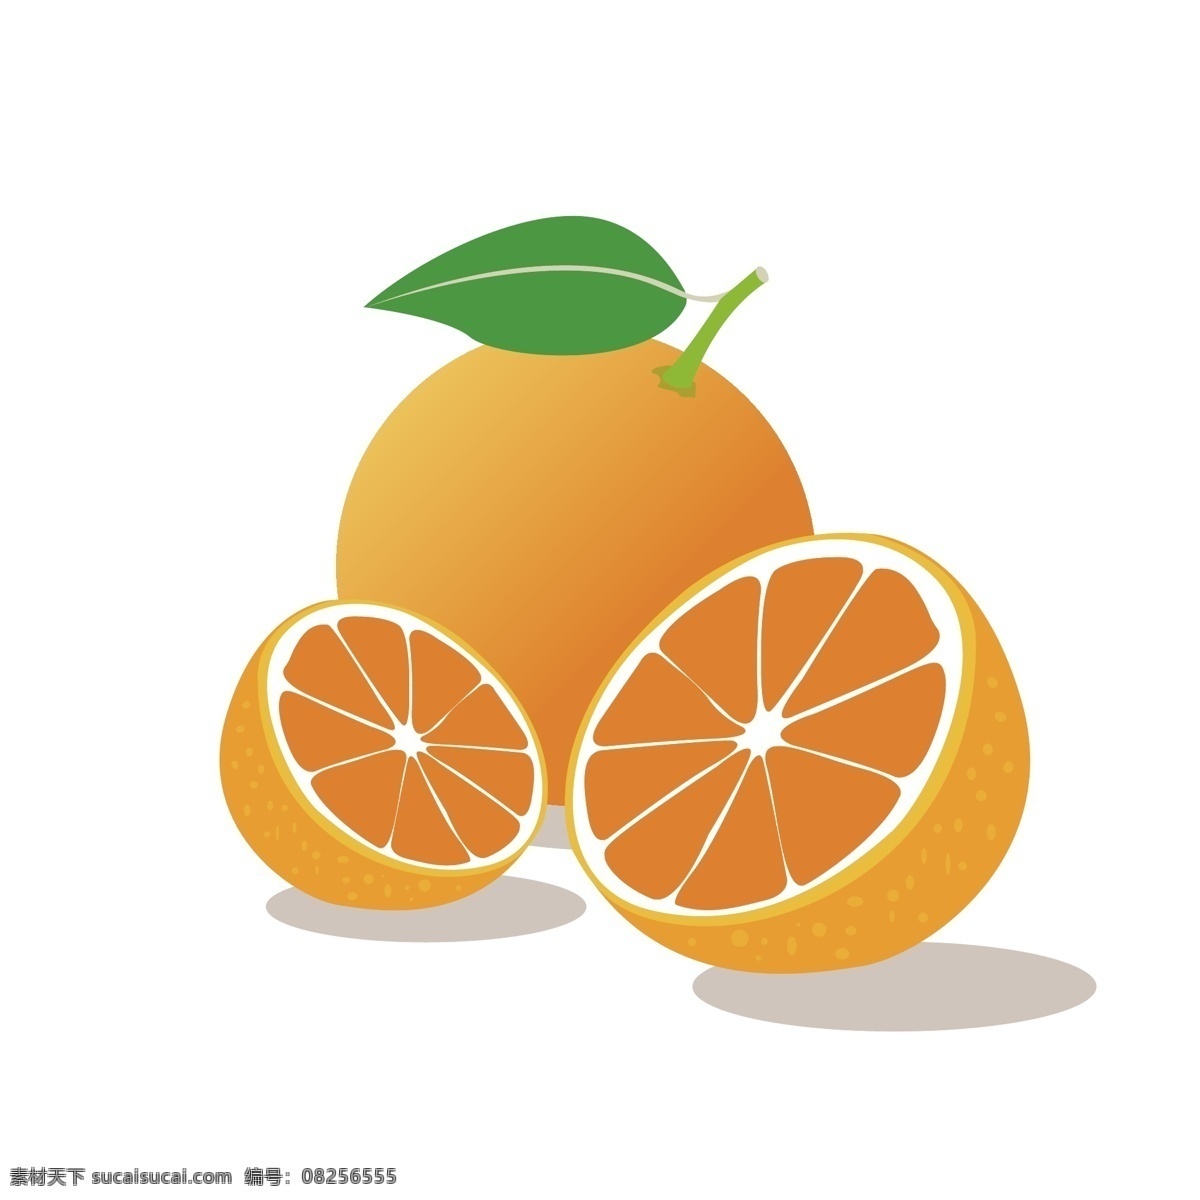 橙子 桔子 橘子 蔬菜 食品 新鲜 美味 美食 素食 蔬菜水果 水果 水果蔬菜 生物世界 设计素材 水果素材 生活用品